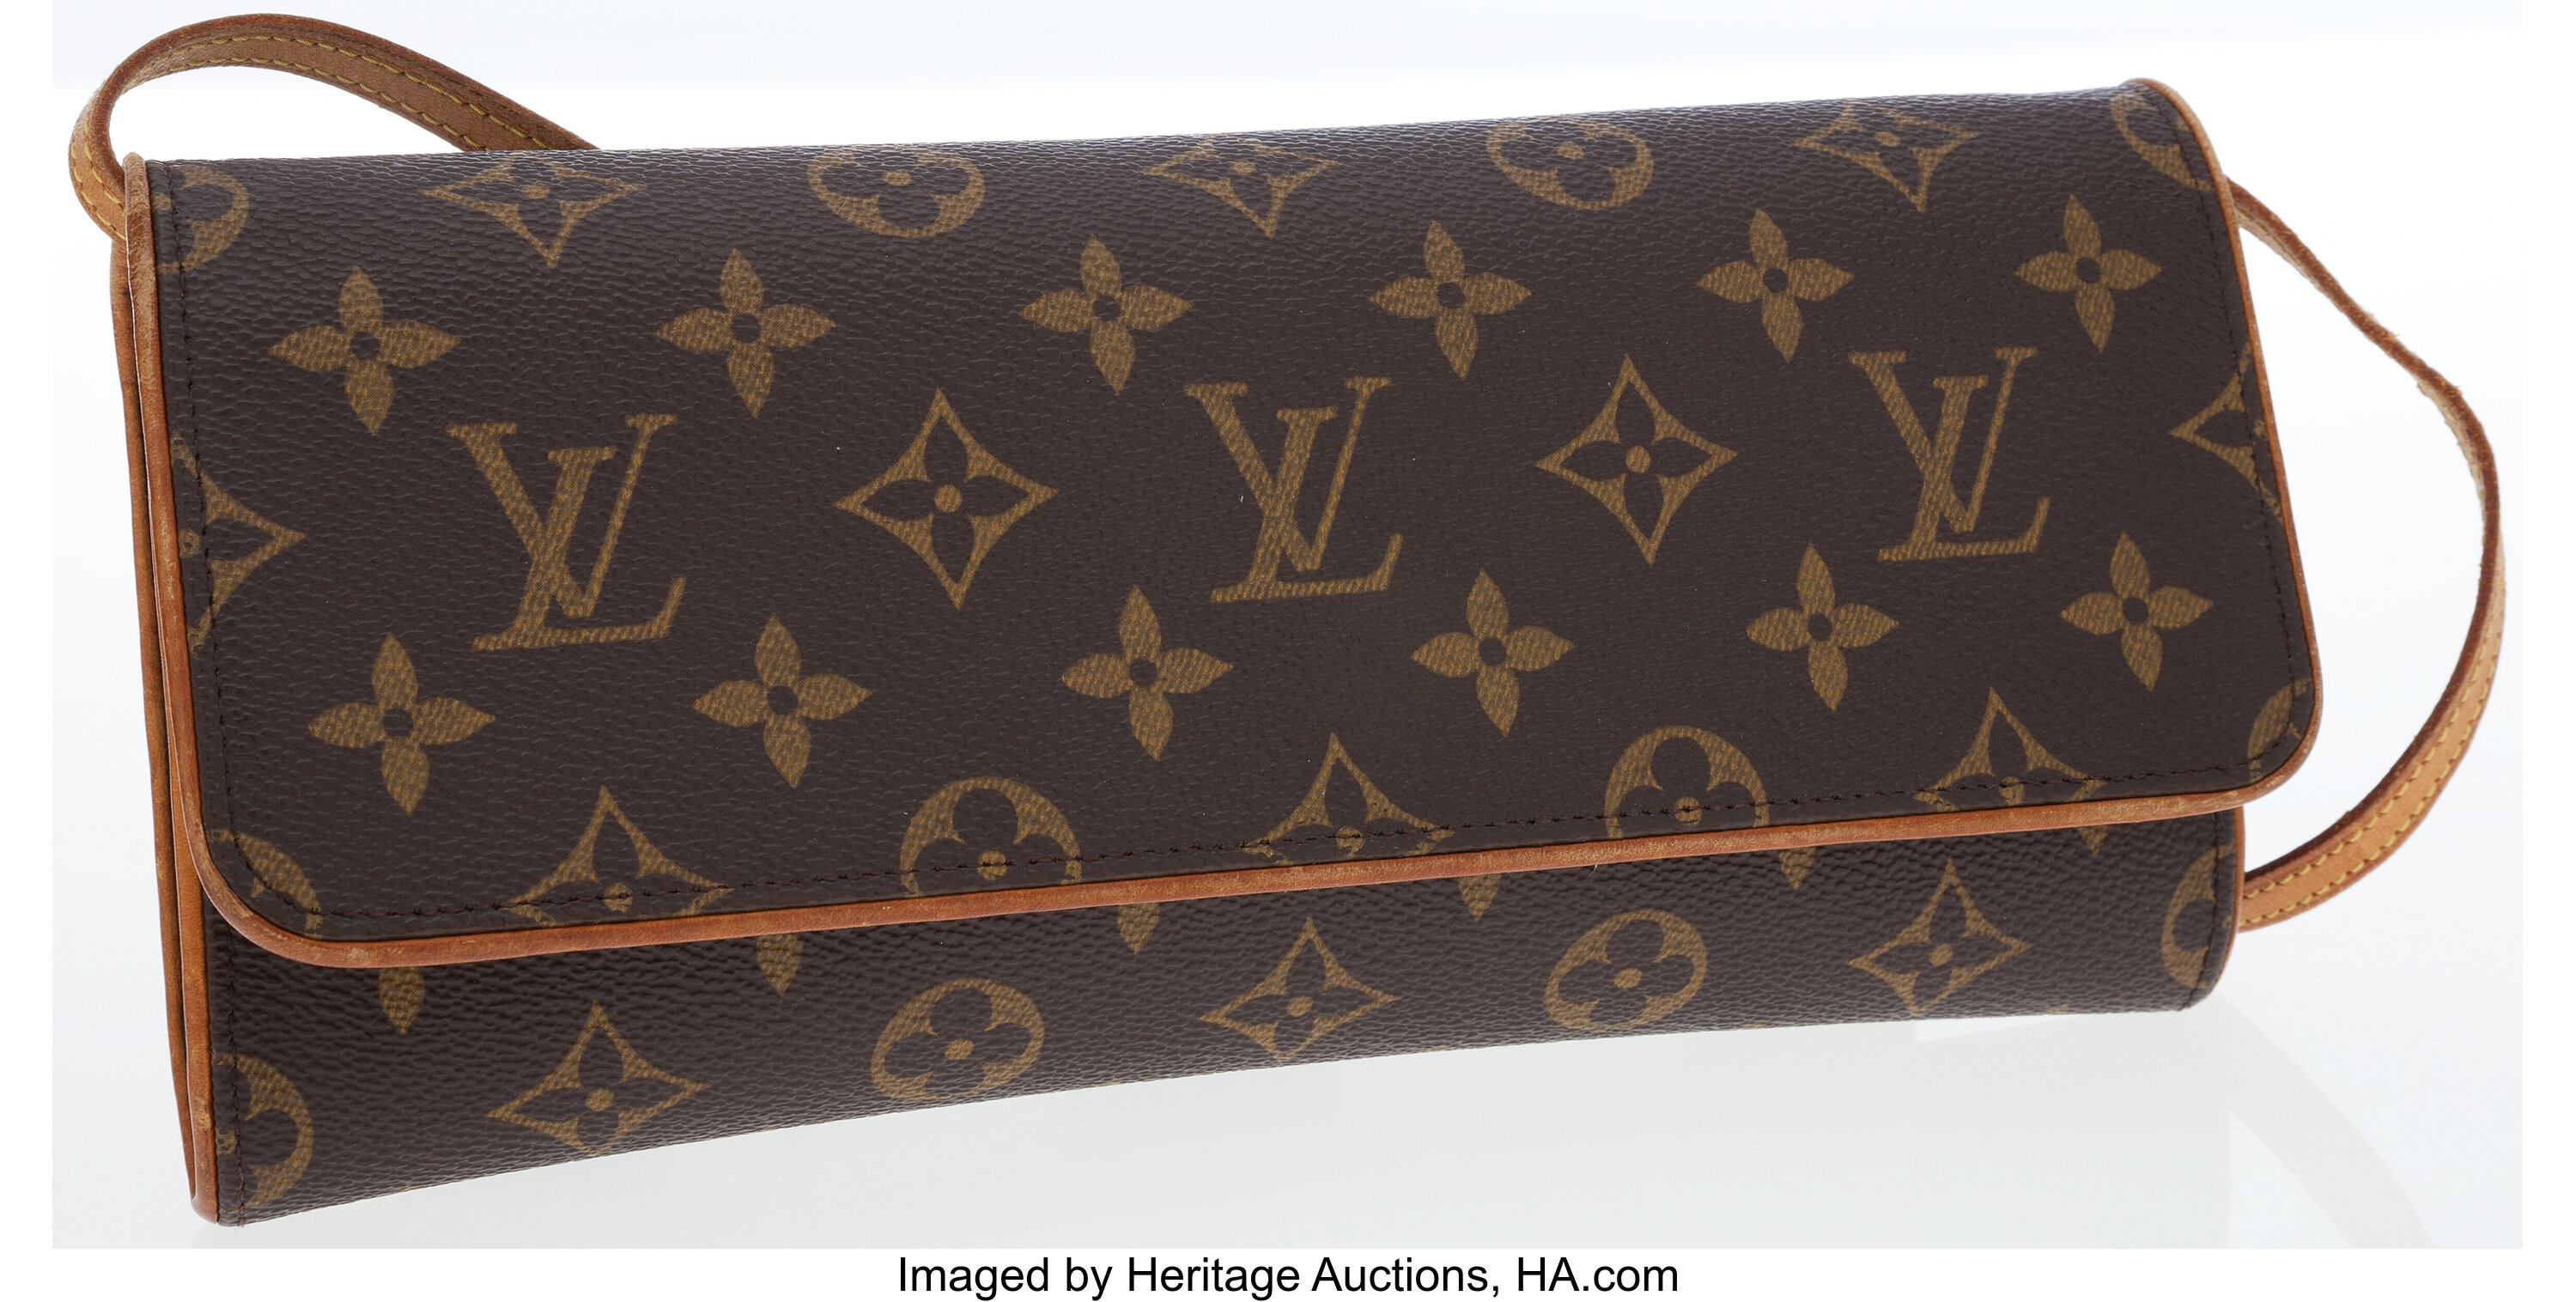 Louis Vuitton's Classic Monogram Unleashes its Wild Side - PurseBop